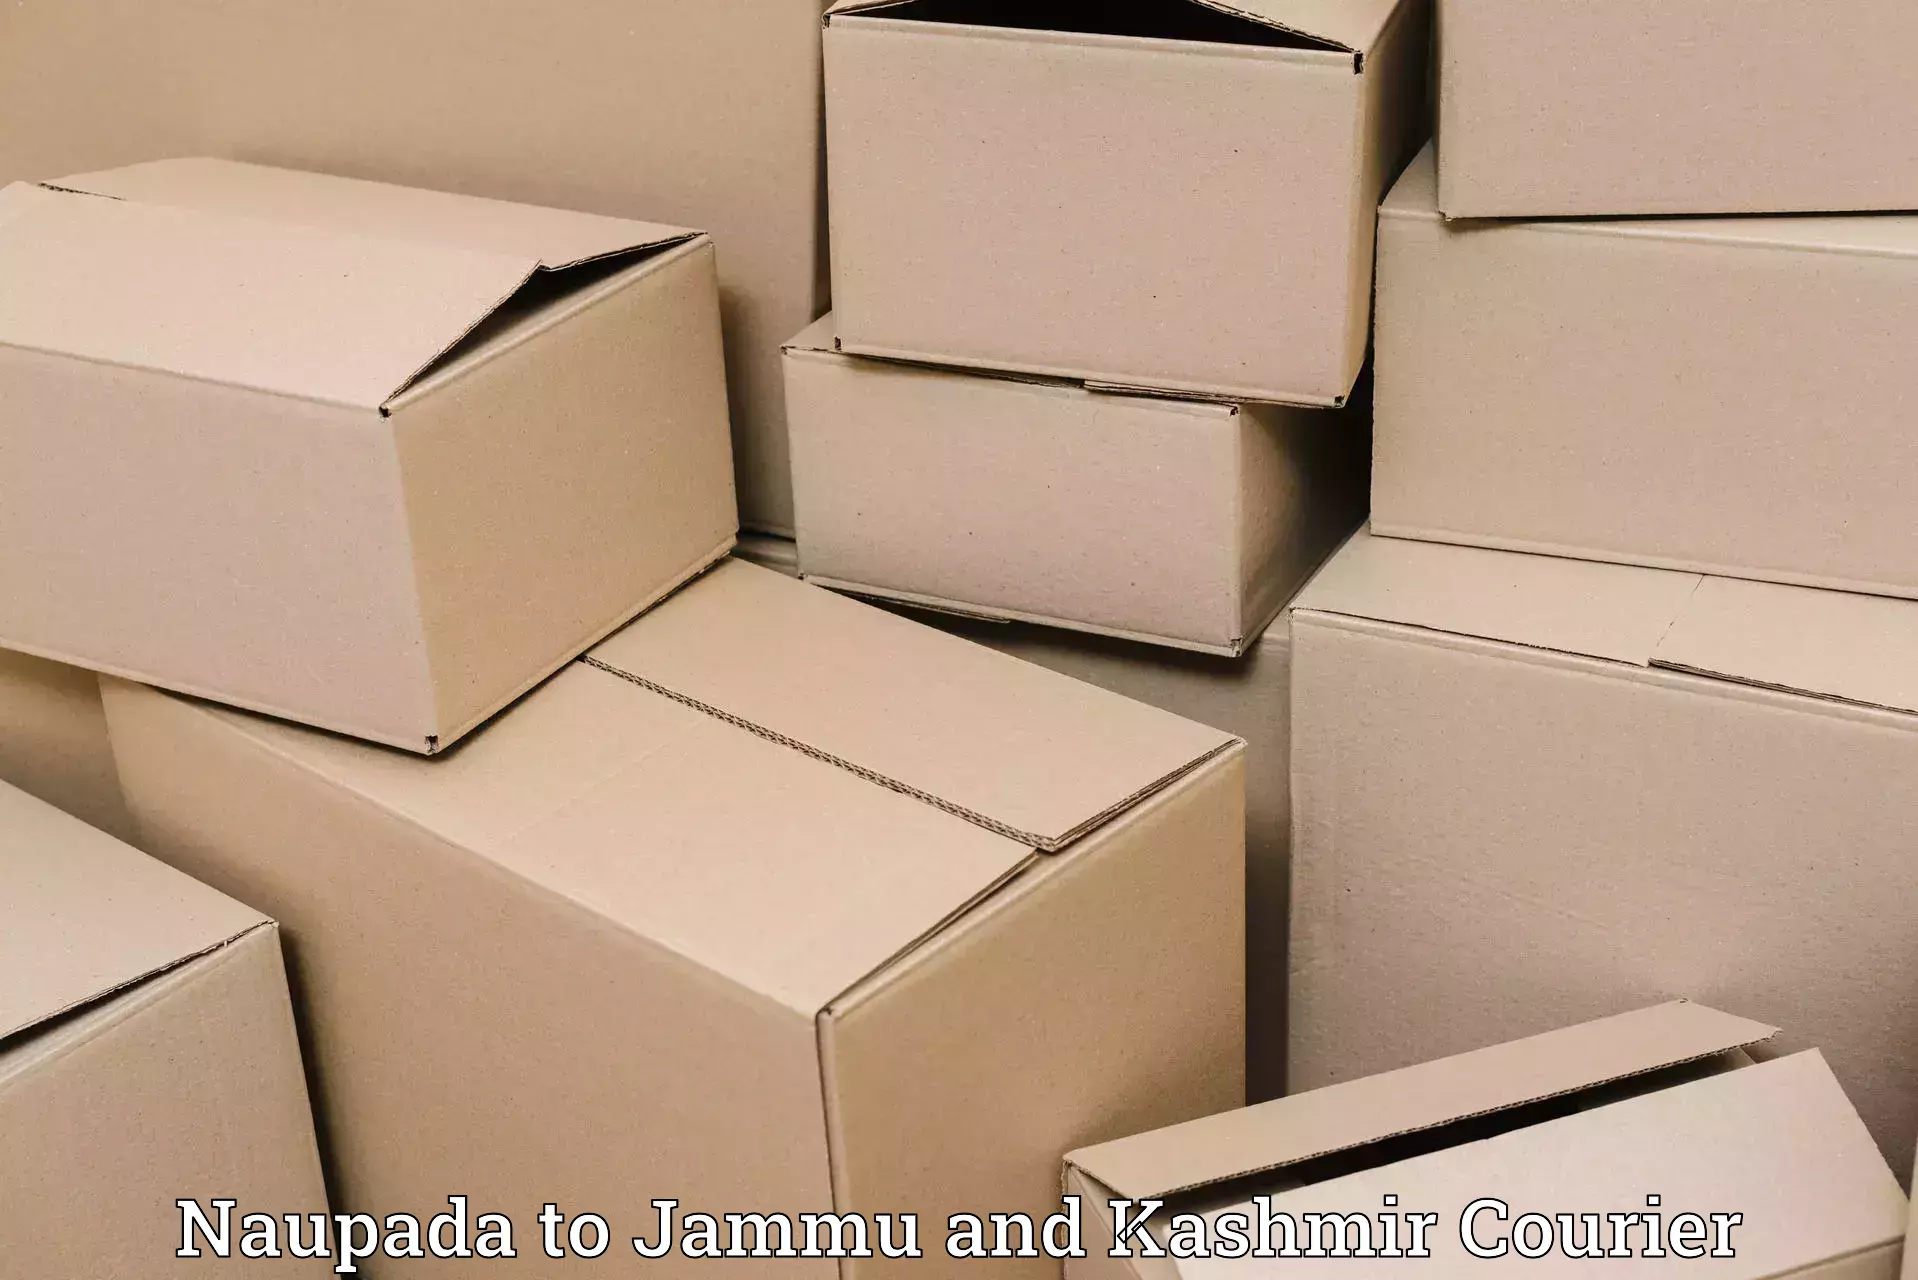 Customer-centric shipping Naupada to Srinagar Kashmir